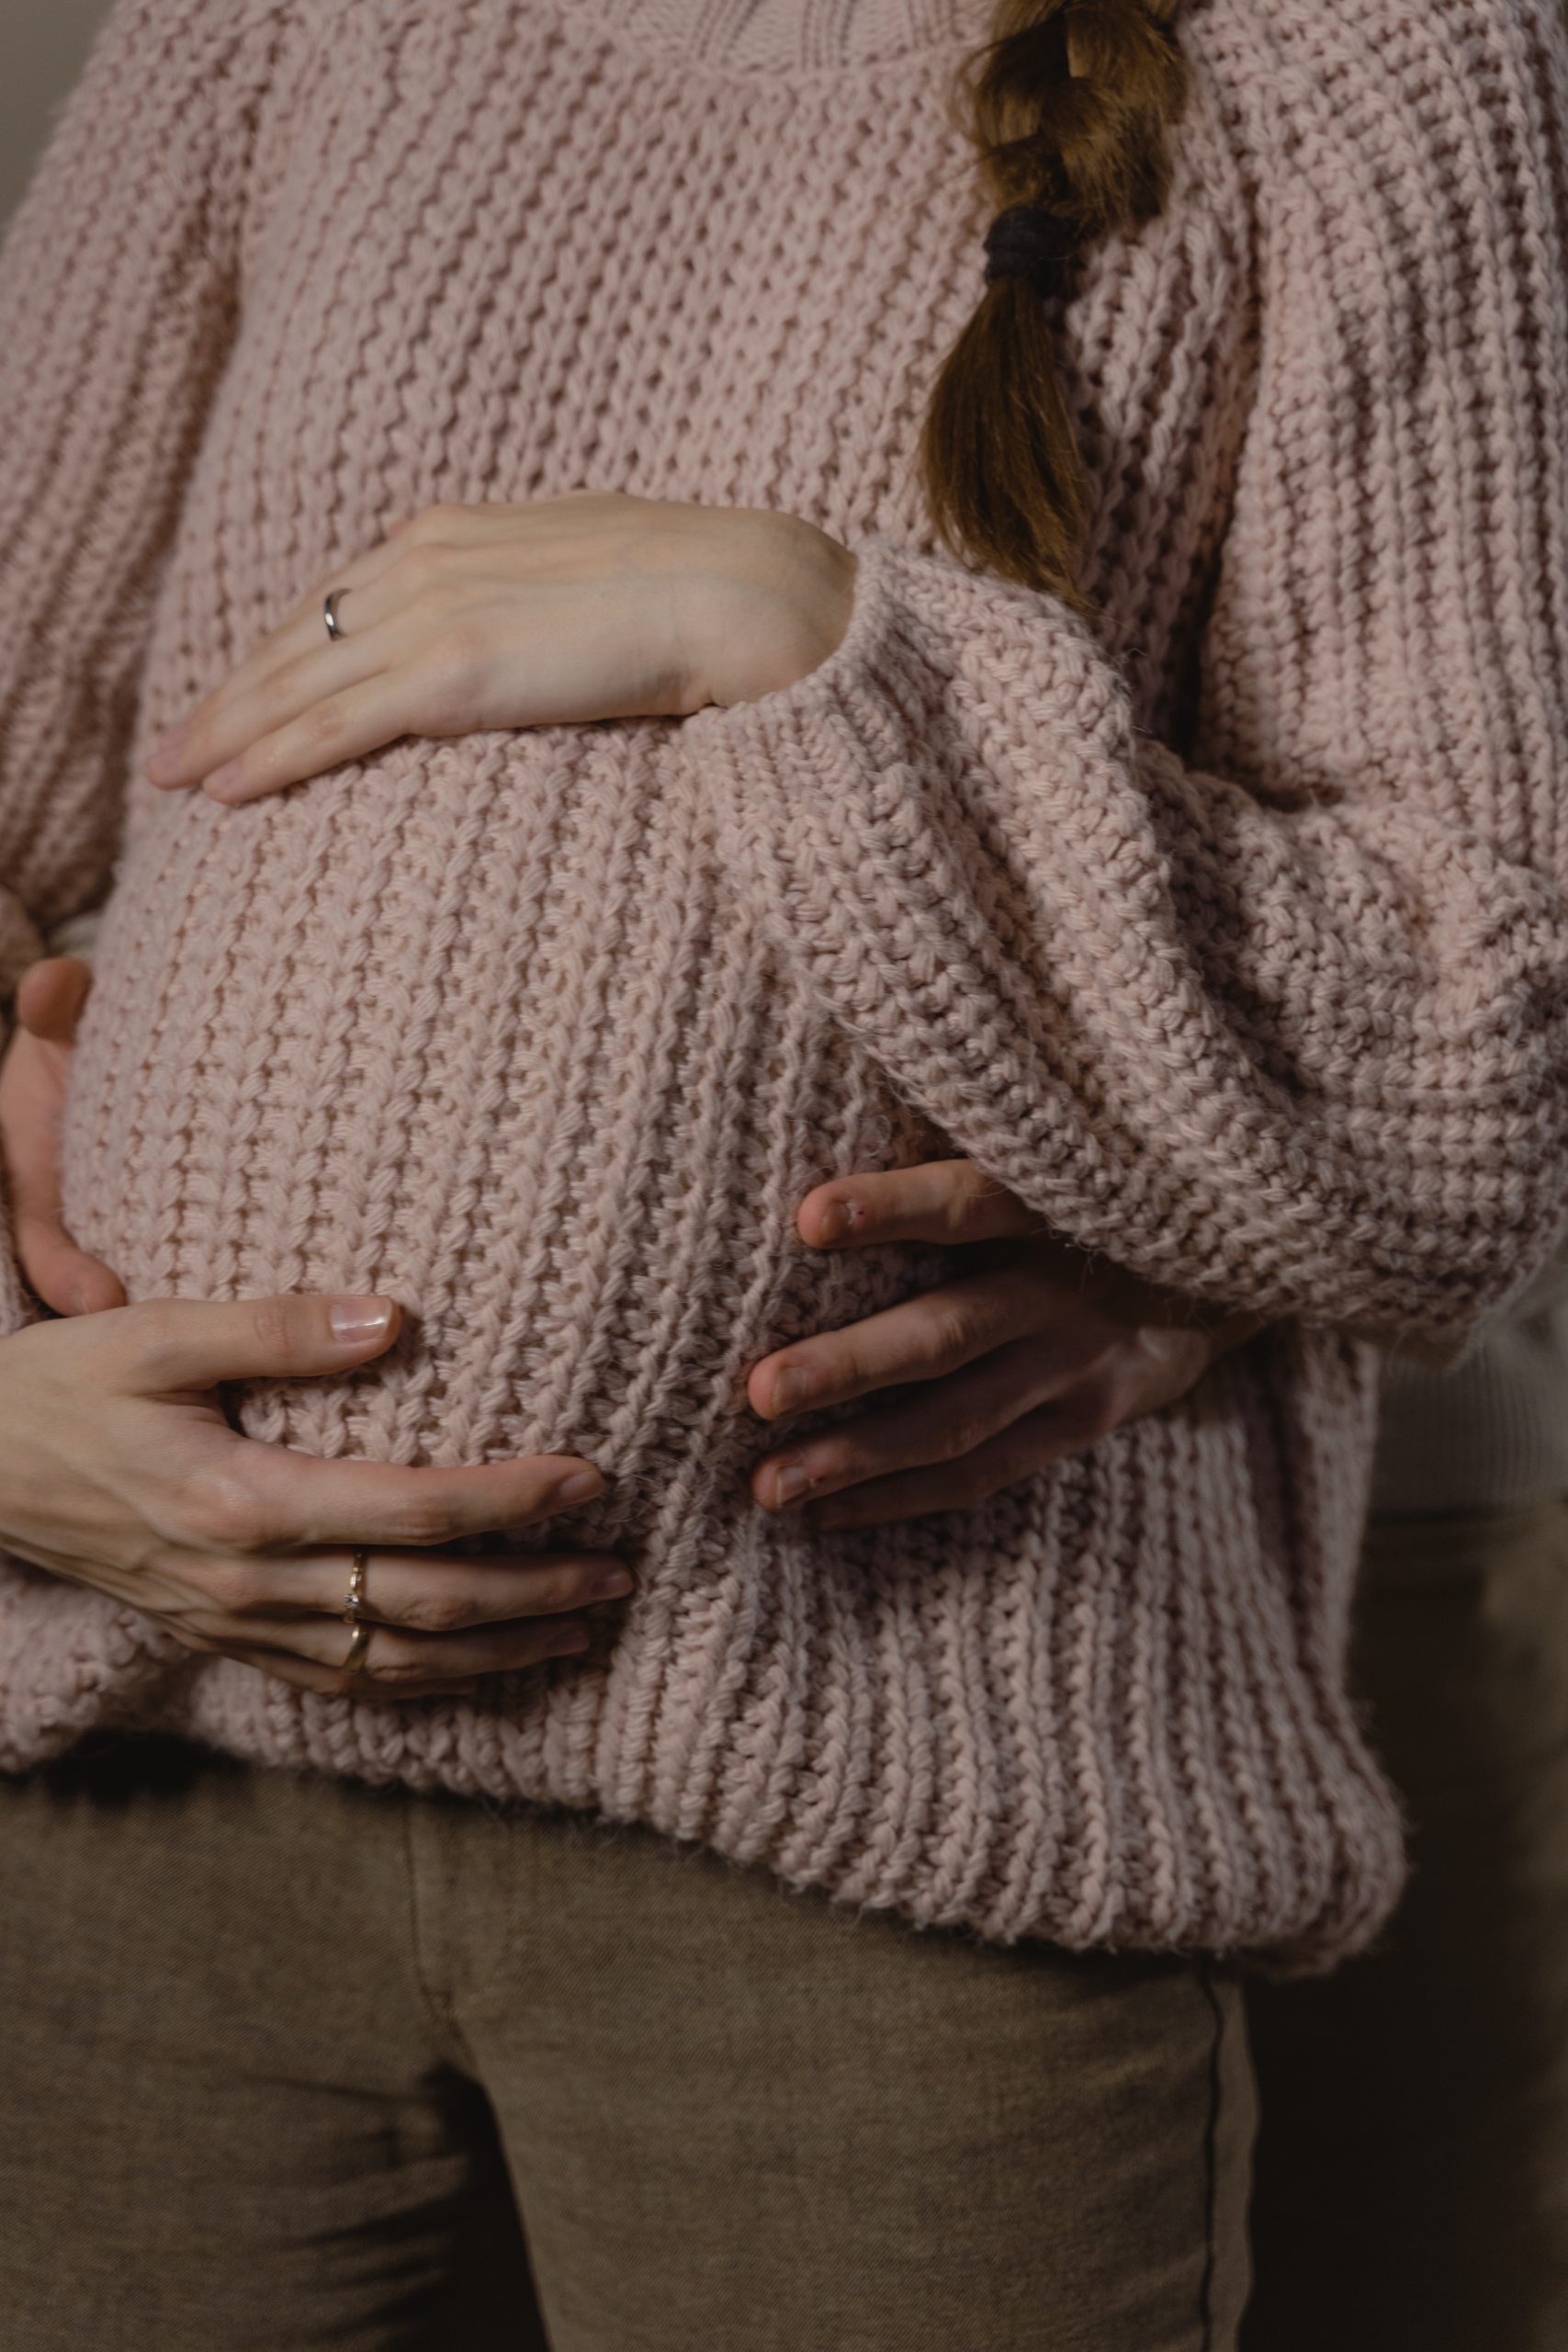 femme enceinte qui porte un pull doux
offre yoga et massage femme enceinte et jeune maman